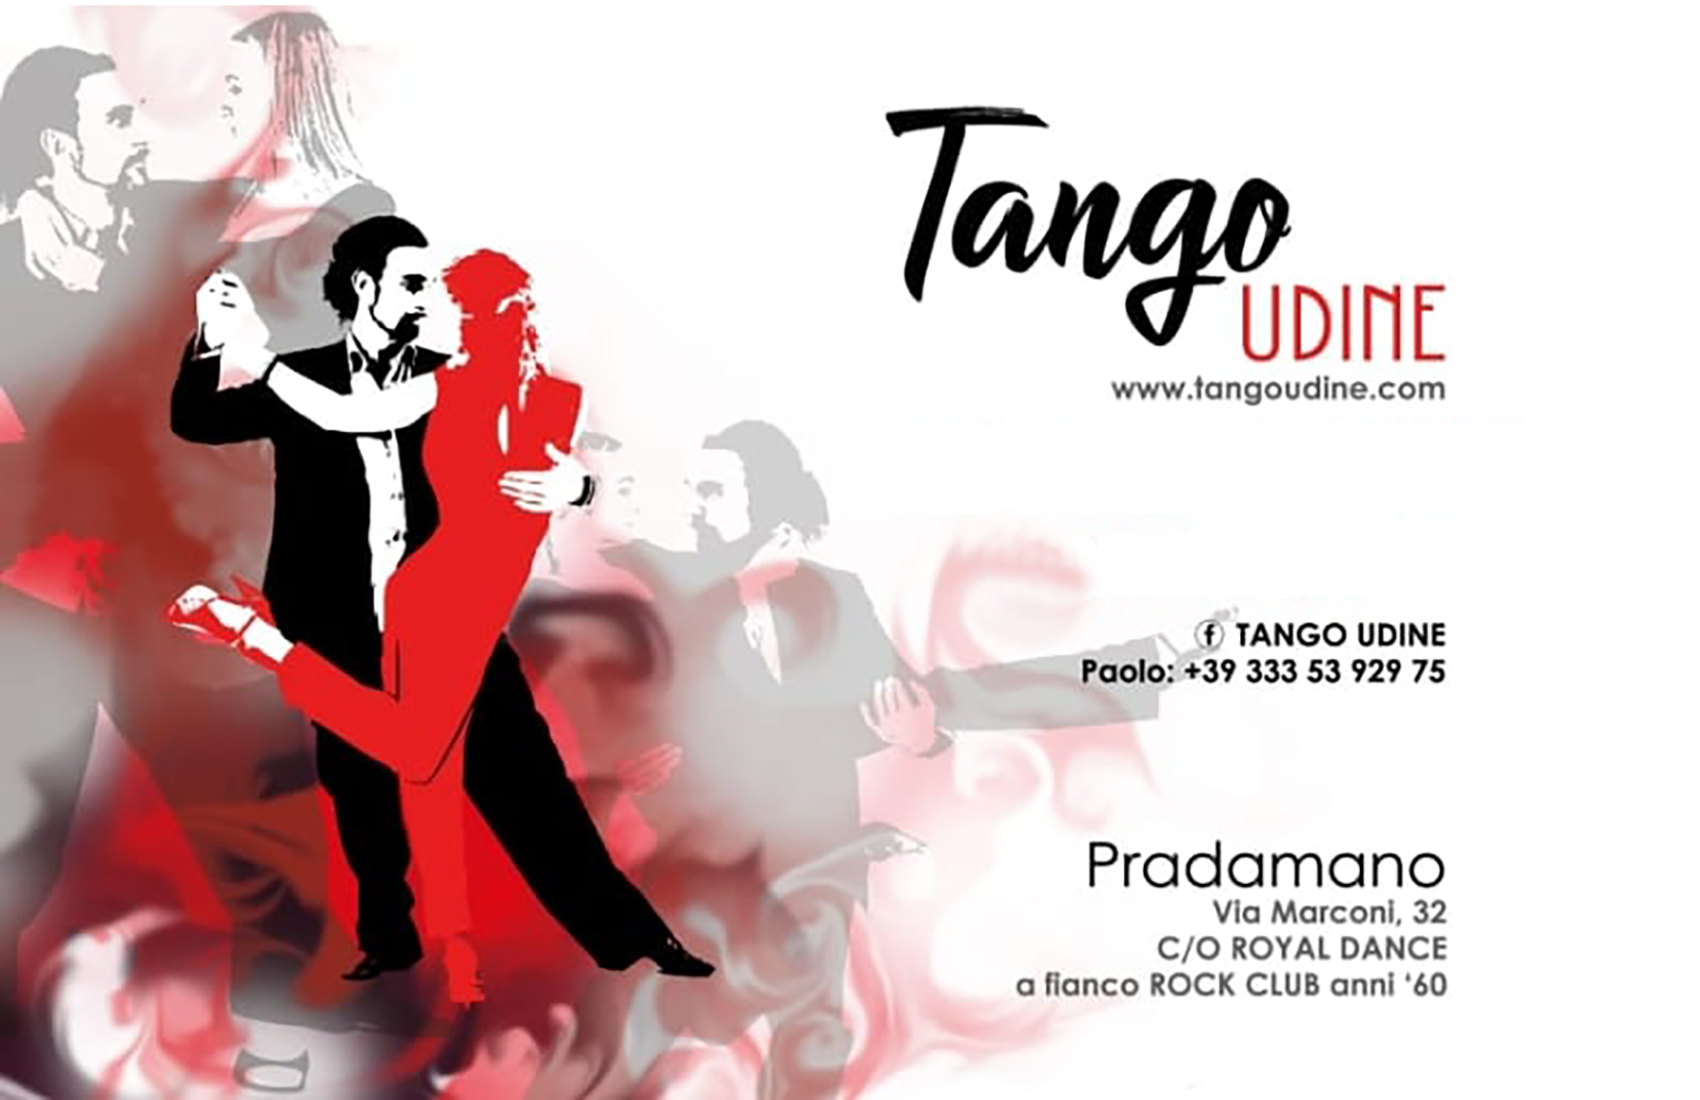 Tango Udine  - Pradamano